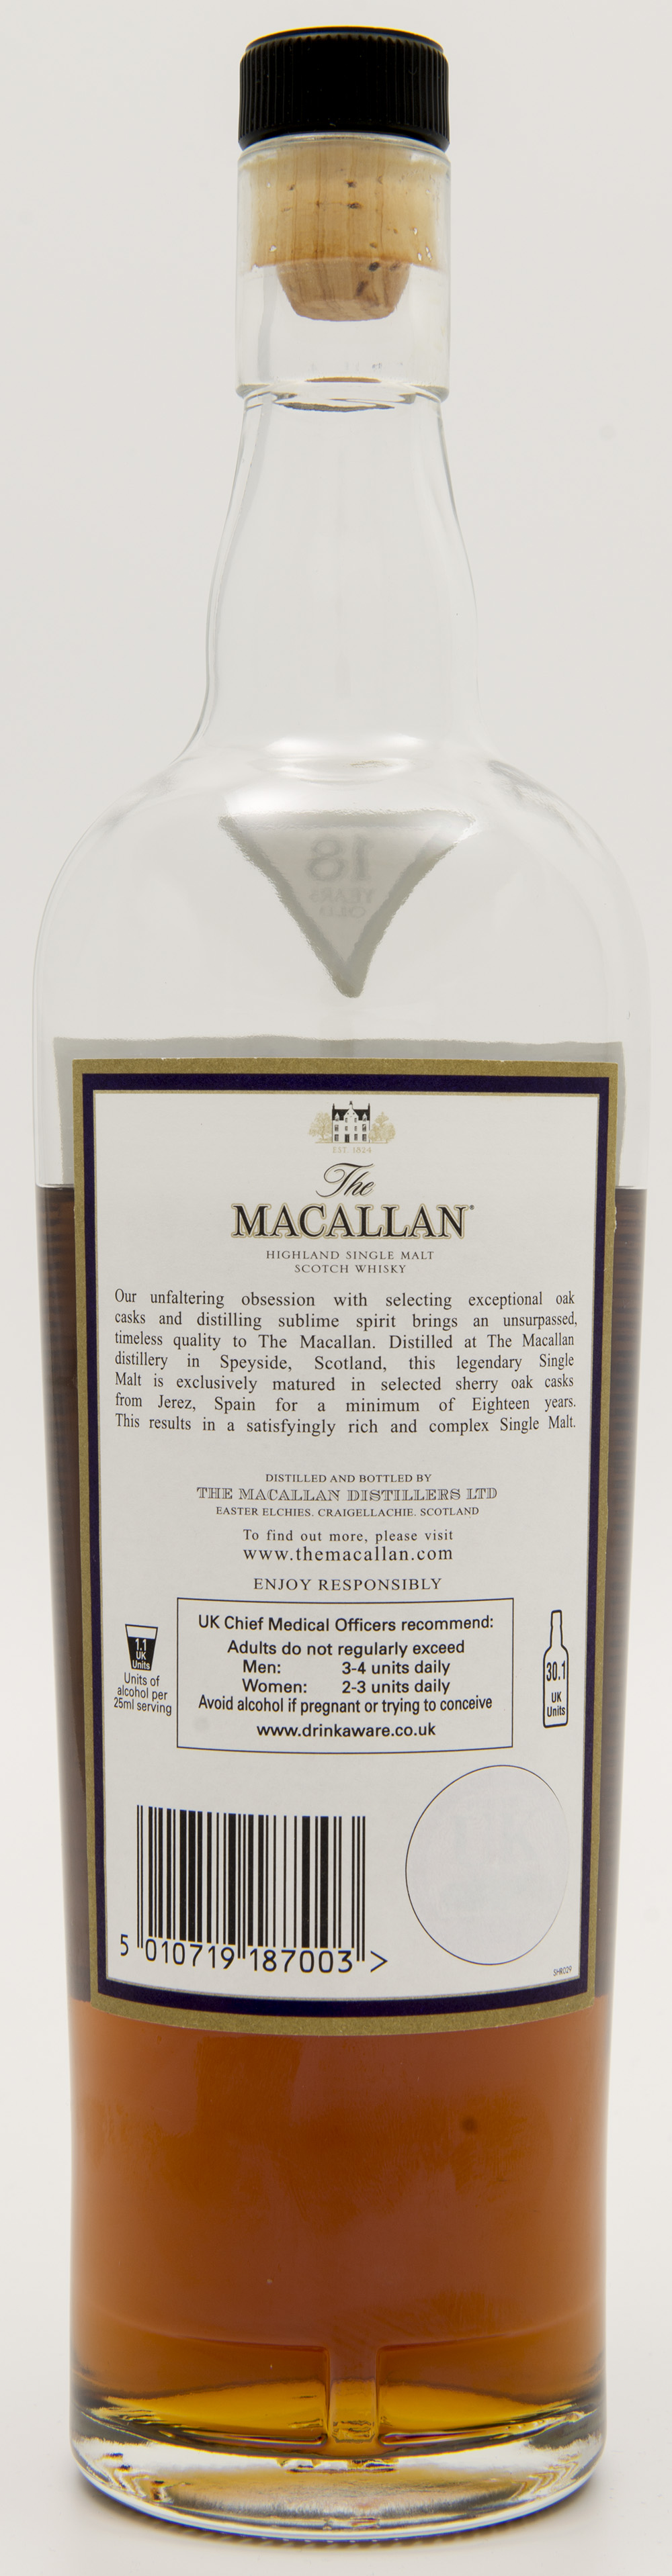 Billede: DSC_3684 - The MacAllan 18 - 1991 - bottle back.jpg